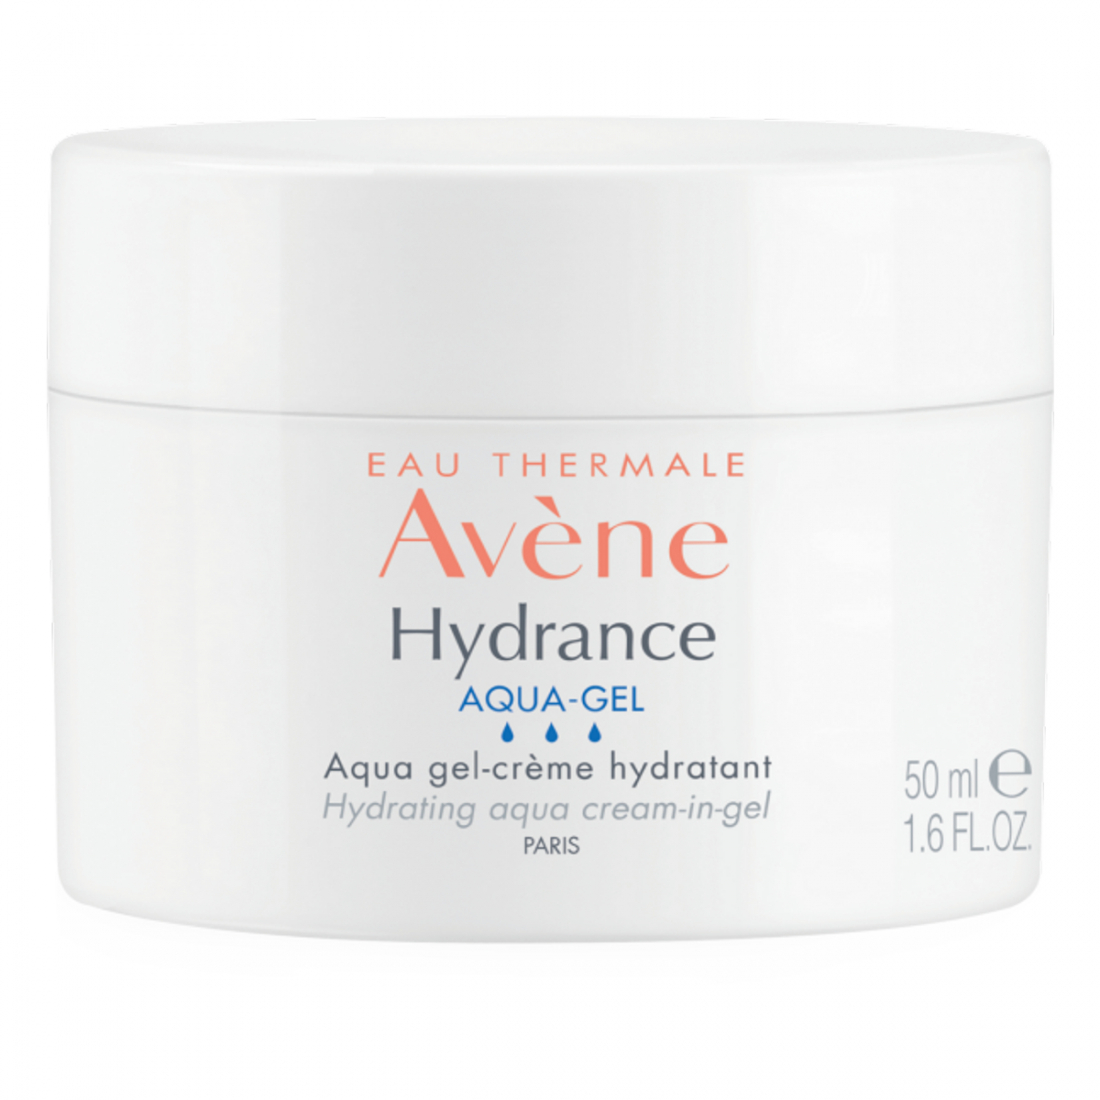 Hydrance Aqua gel-crème hydratant - 50 ml